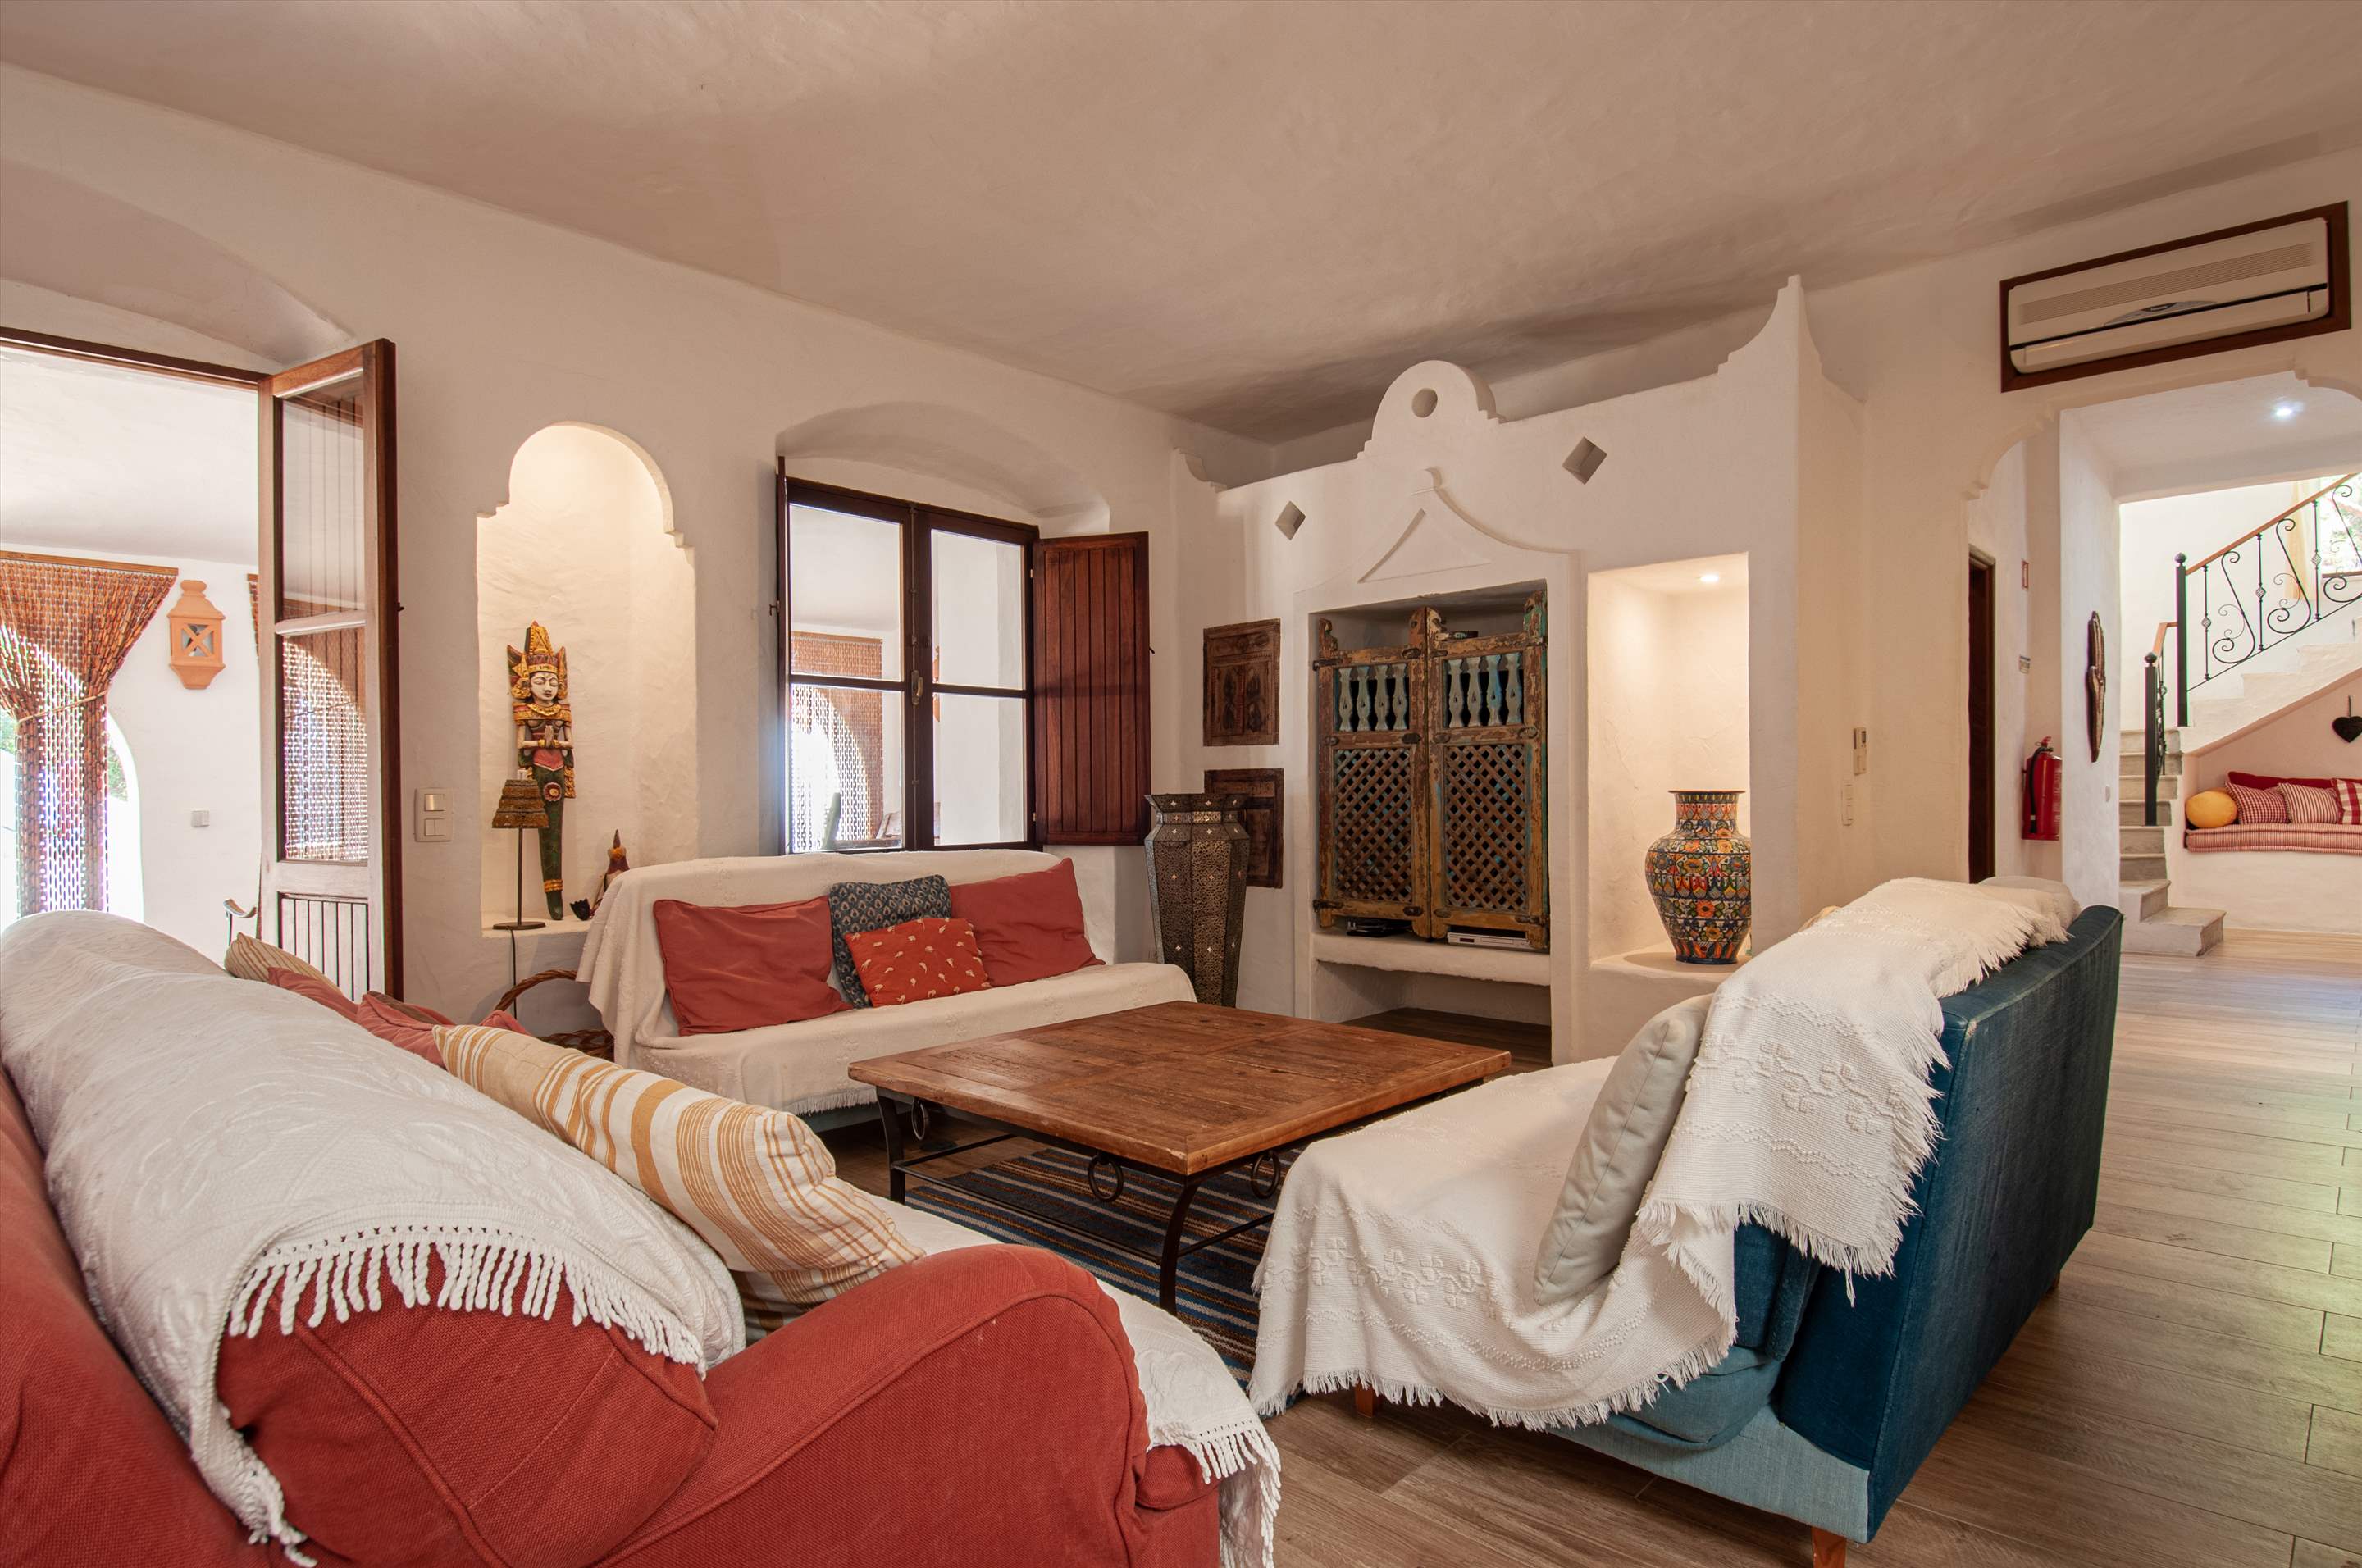 Villa Cristofina, 5 Bedroom, 5 bedroom villa in Vale do Lobo, Algarve Photo #4